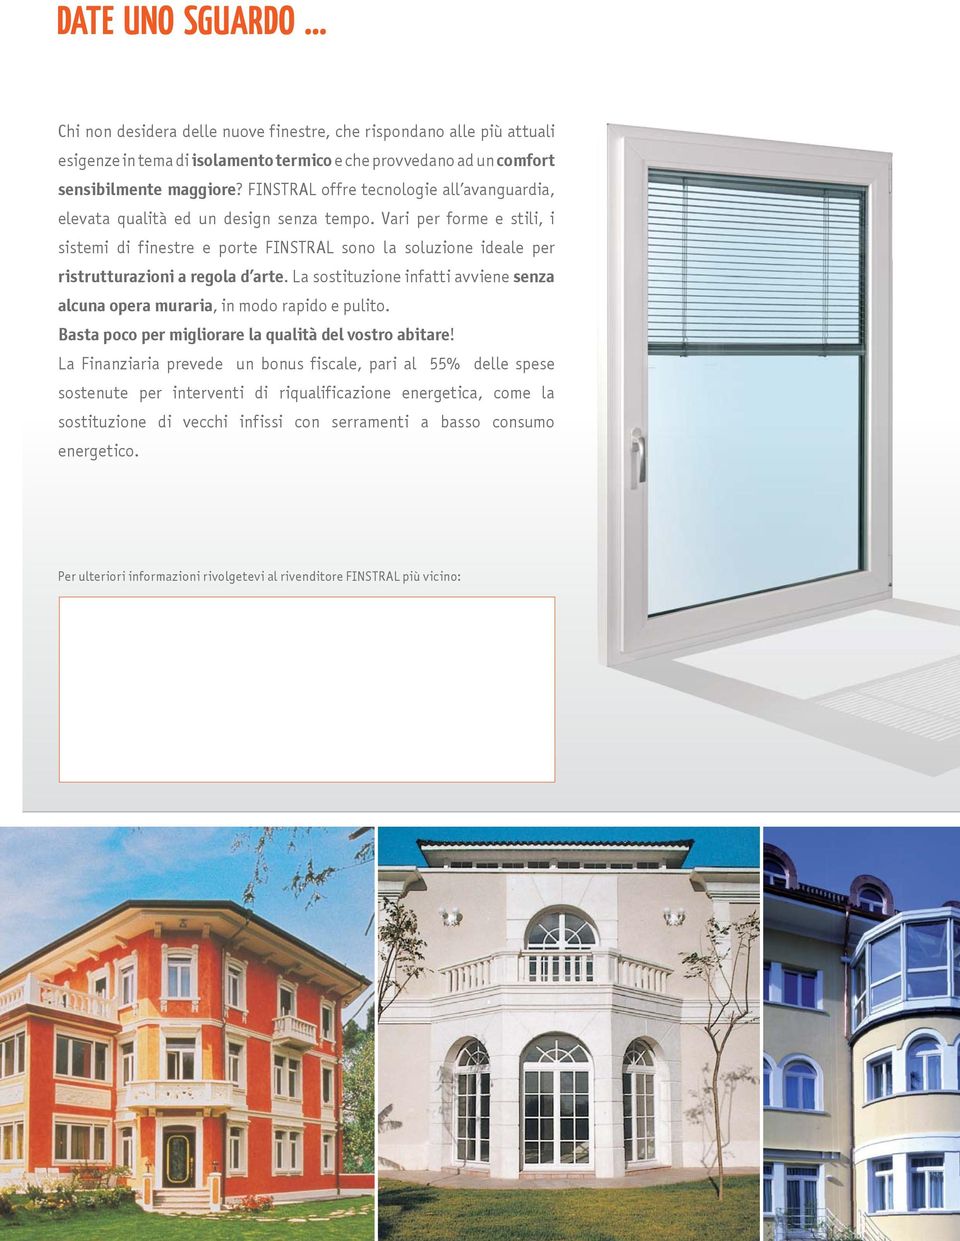 Vari per forme e stili, i sistemi di finestre e porte FINSTRAL sono la soluzione ideale per ristrutturazioni a regola d arte.